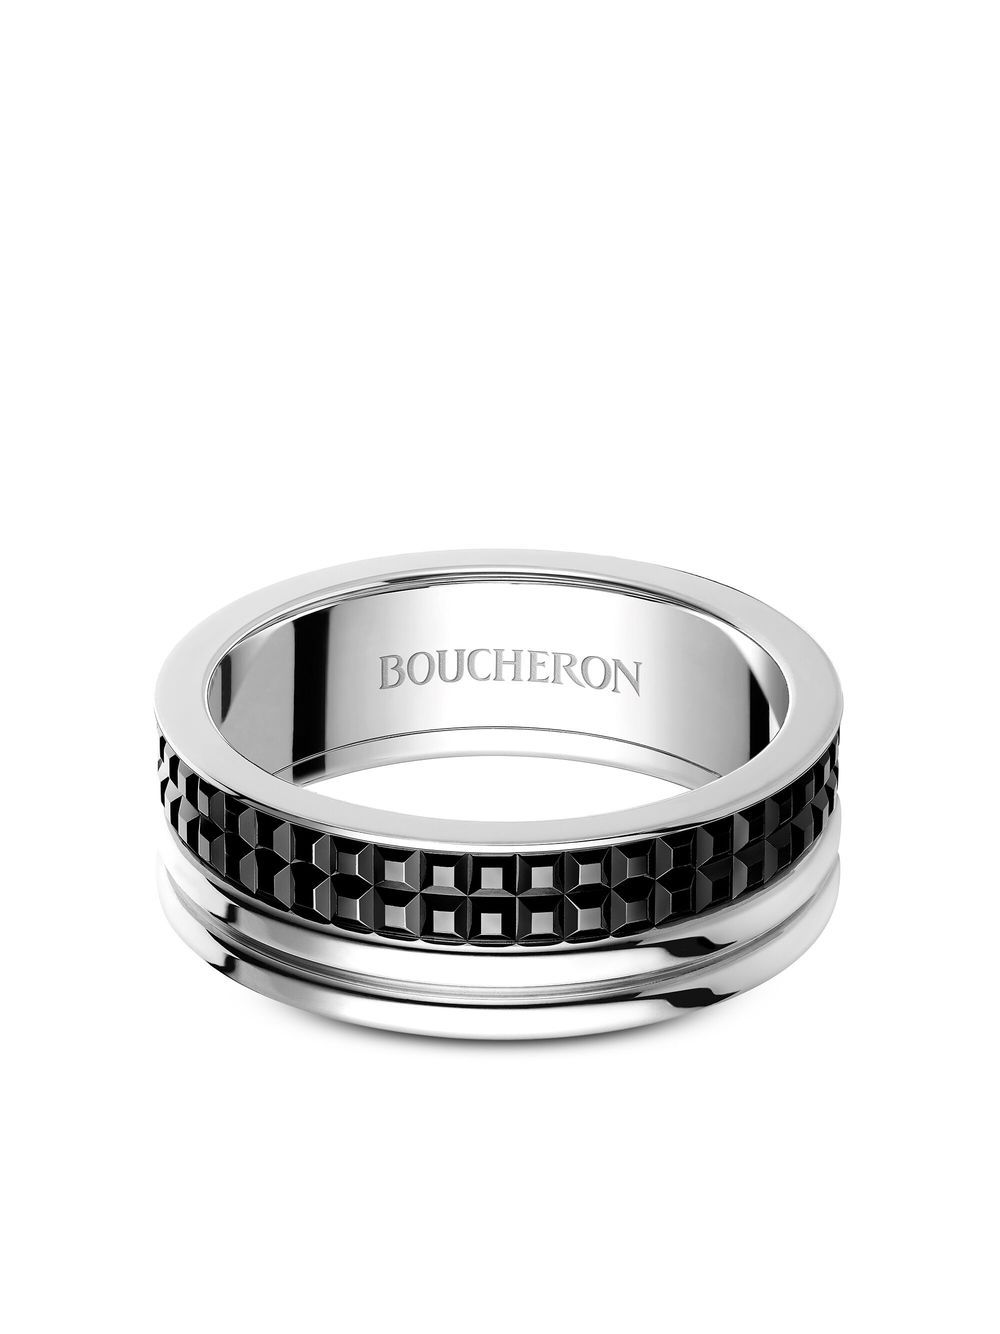 Boucheron 18kt white gold Quatre Classique wedding band - Silver von Boucheron